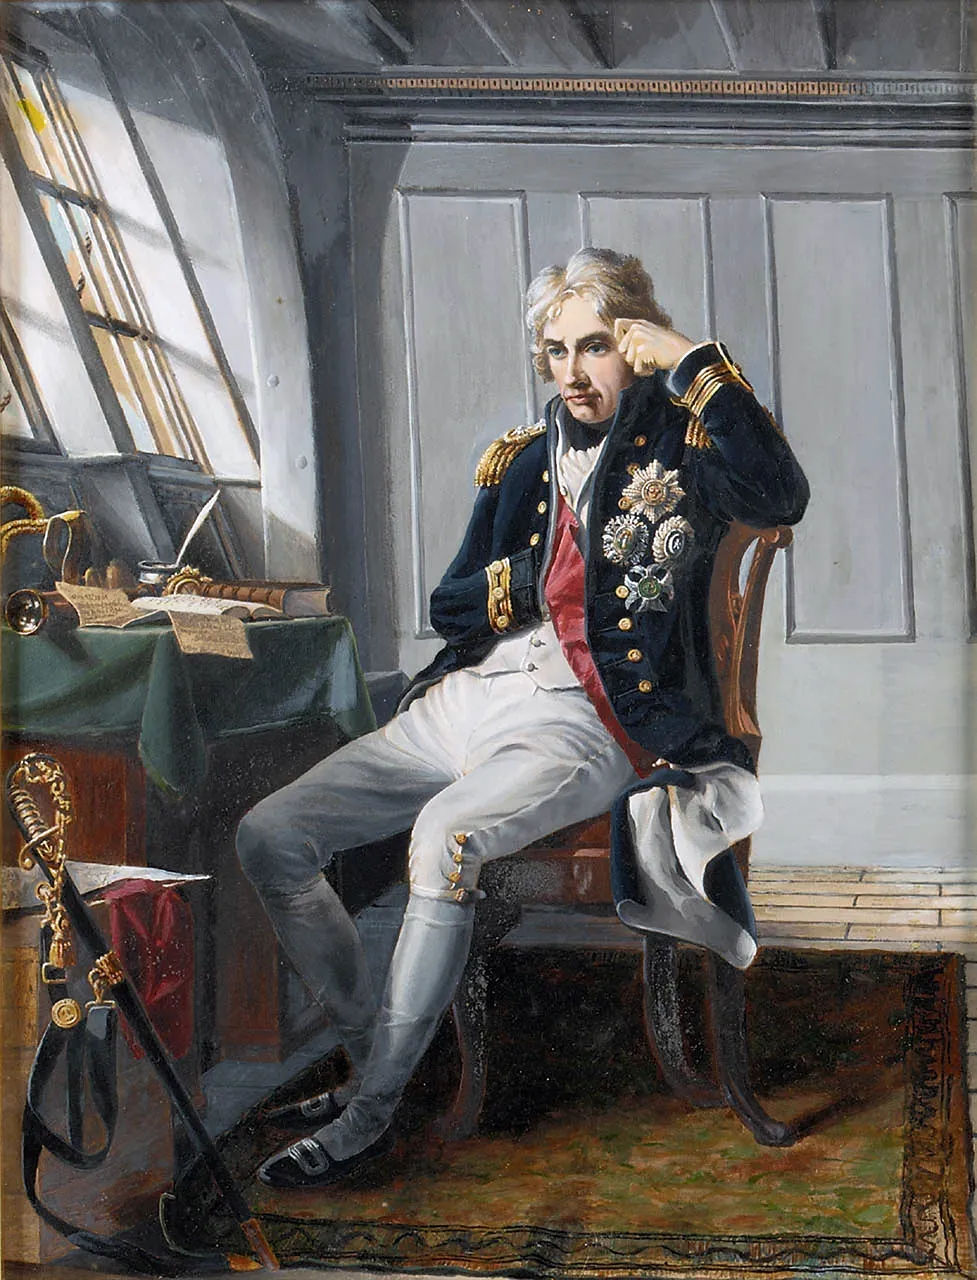 Горацио Нельсон (1758-1805)